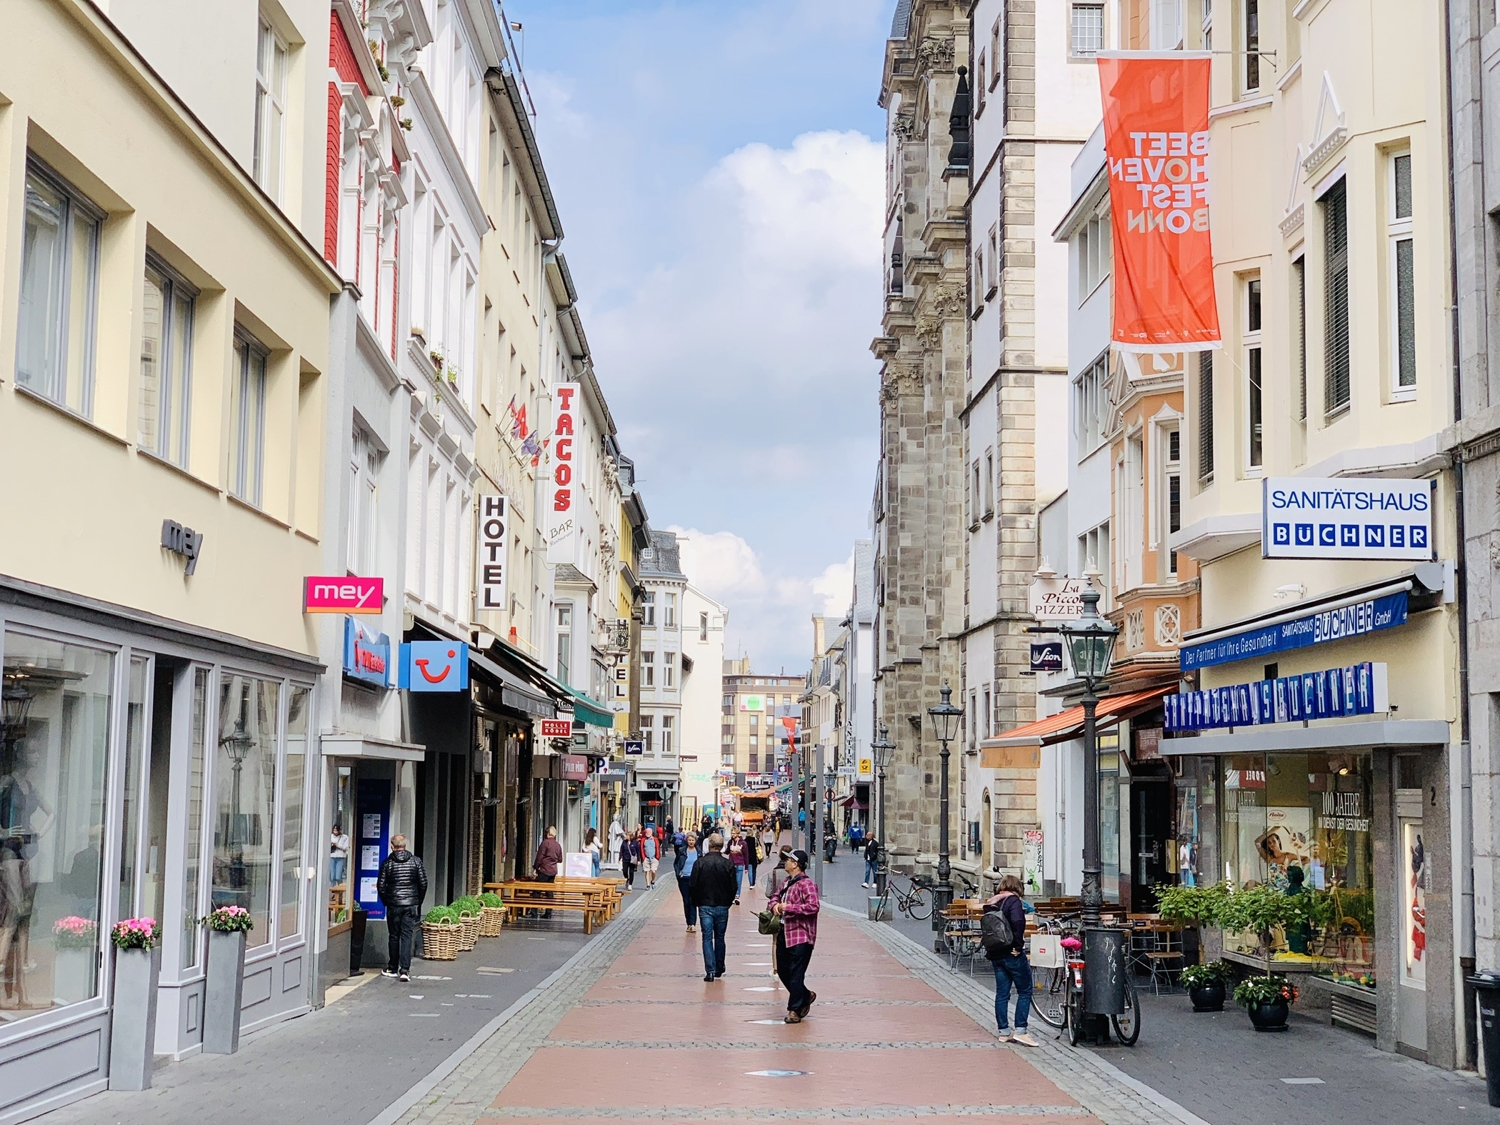 Investment / Wohn- und Geschäftshäuser in Bonn-Zentrum - Straßenansicht